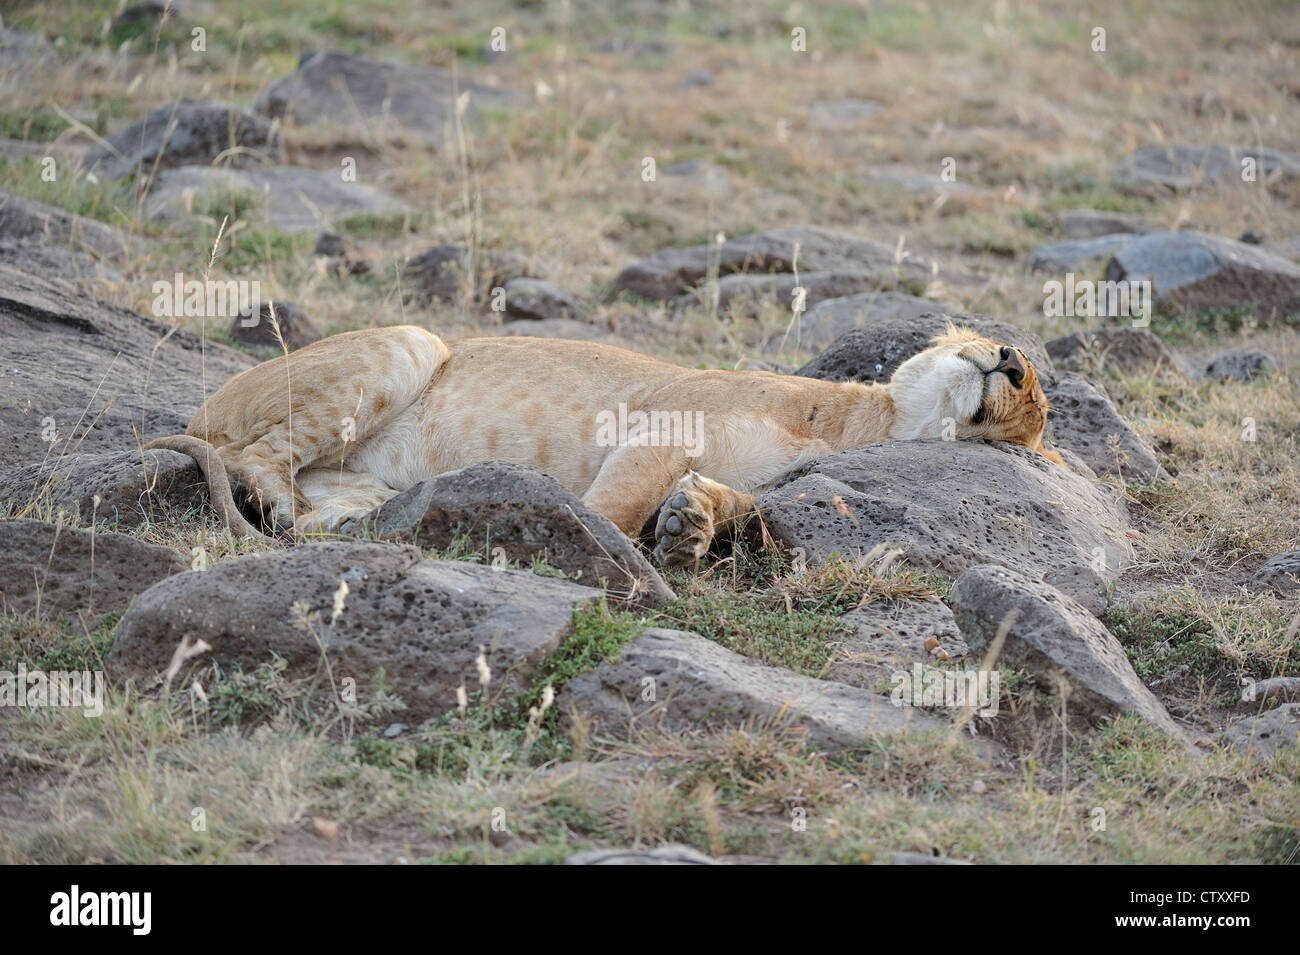 East African Lion - Massai lion (Panthera leo) nubica femme dormir sur rochers Masai Mara - Kenya - Afrique de l'Est Banque D'Images